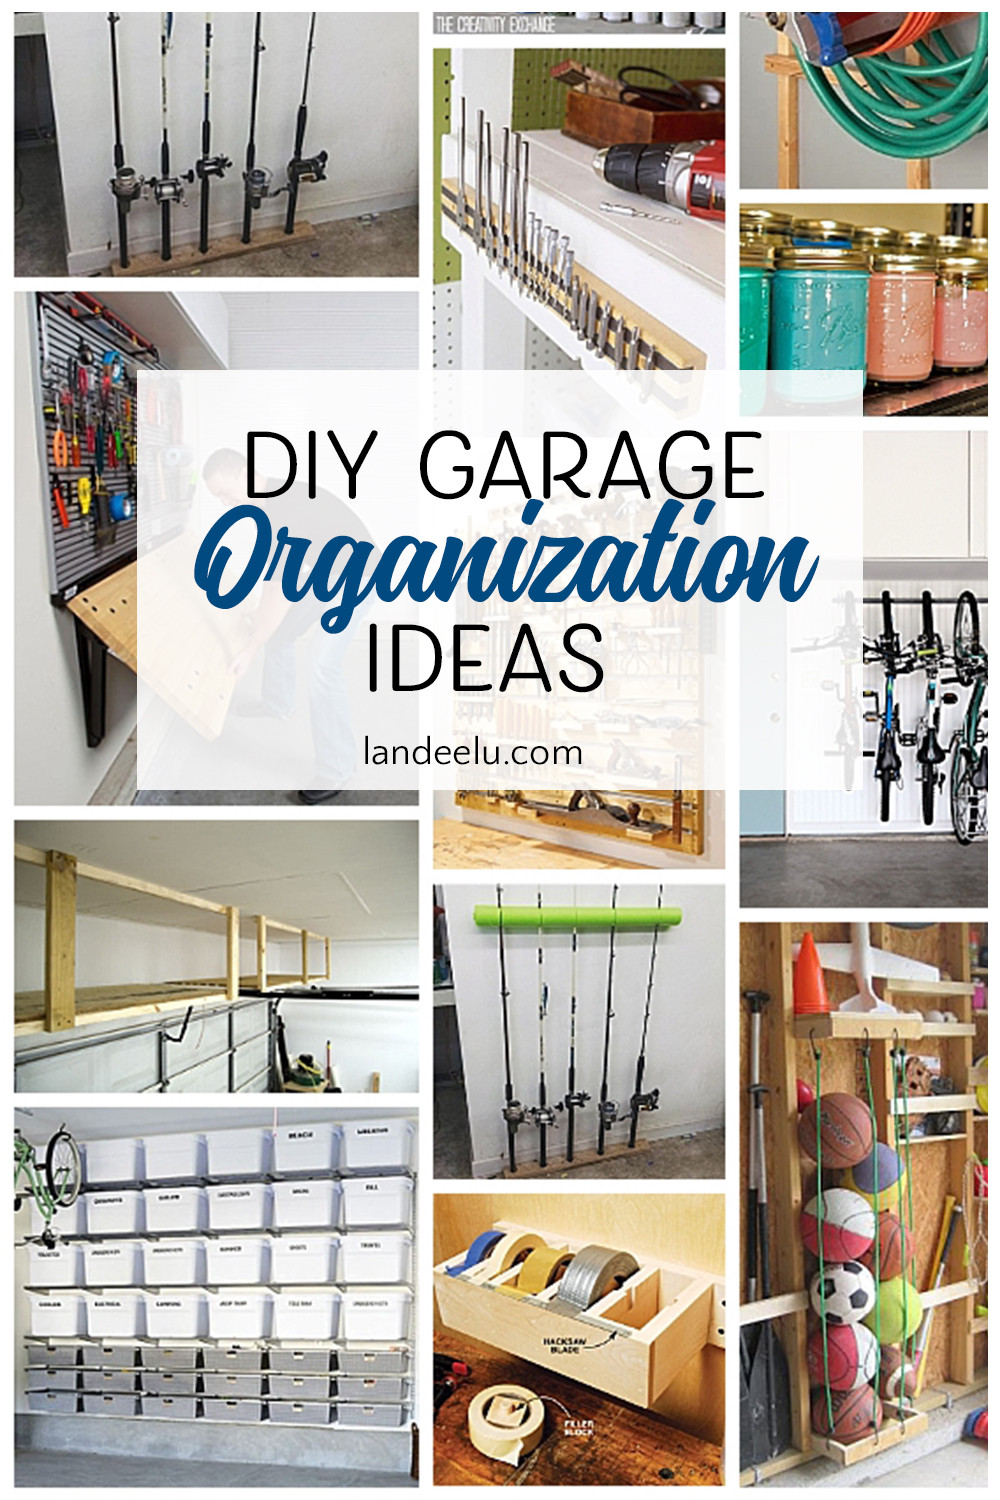 DIY Garage Organization Ideas
 Awesome DIY Garage Organization Ideas landeelu